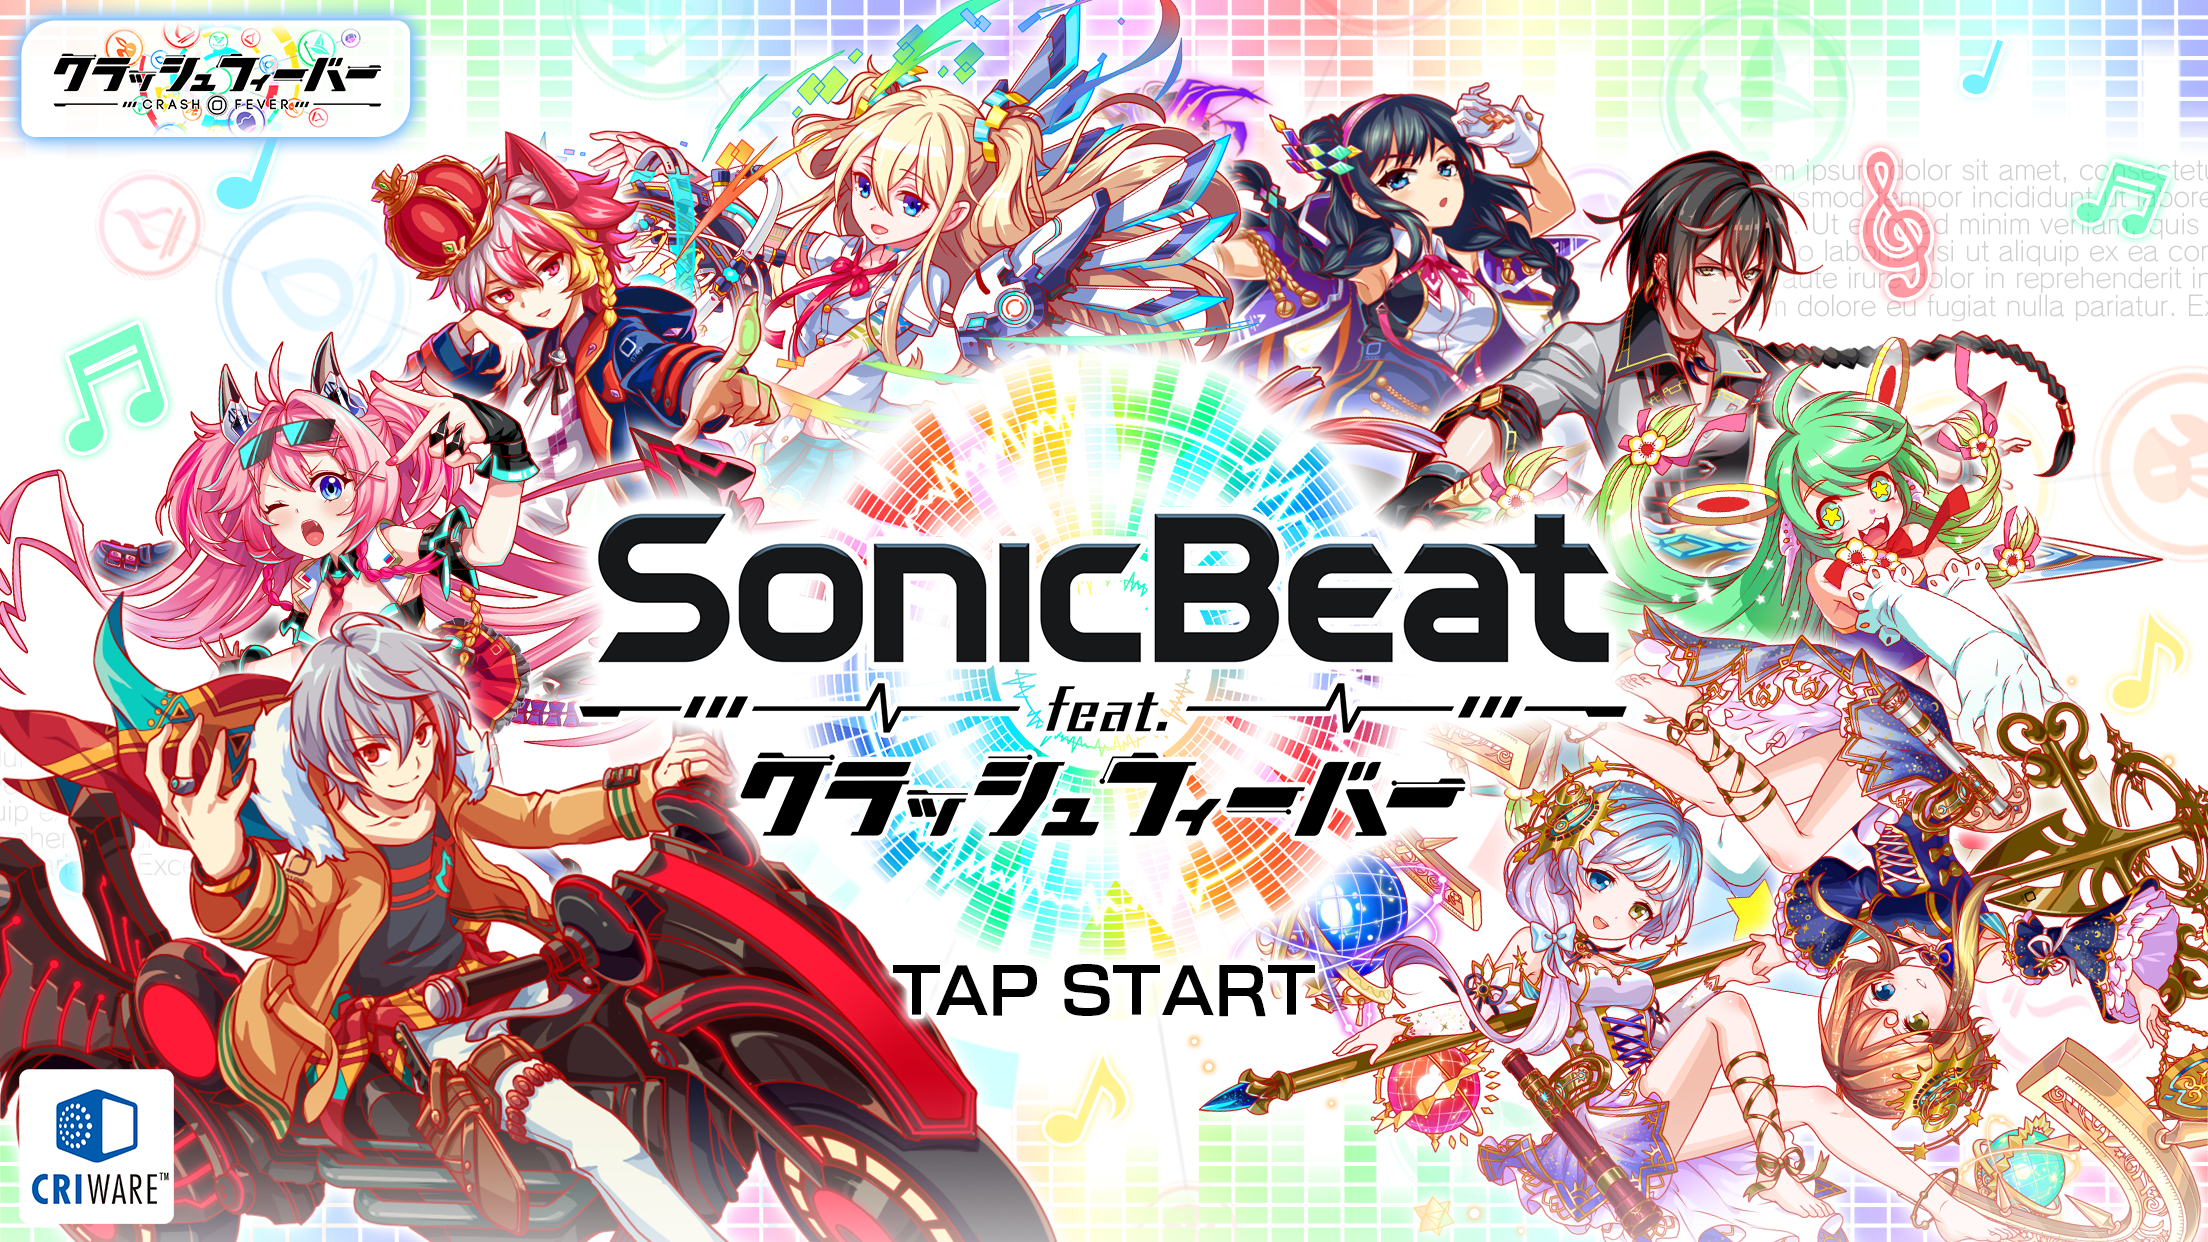 Sonic Beat Feat クラッシュフィーバー を本日より期間限定で全世界へ無料配信 ワンダープラネット株式会社のプレスリリース